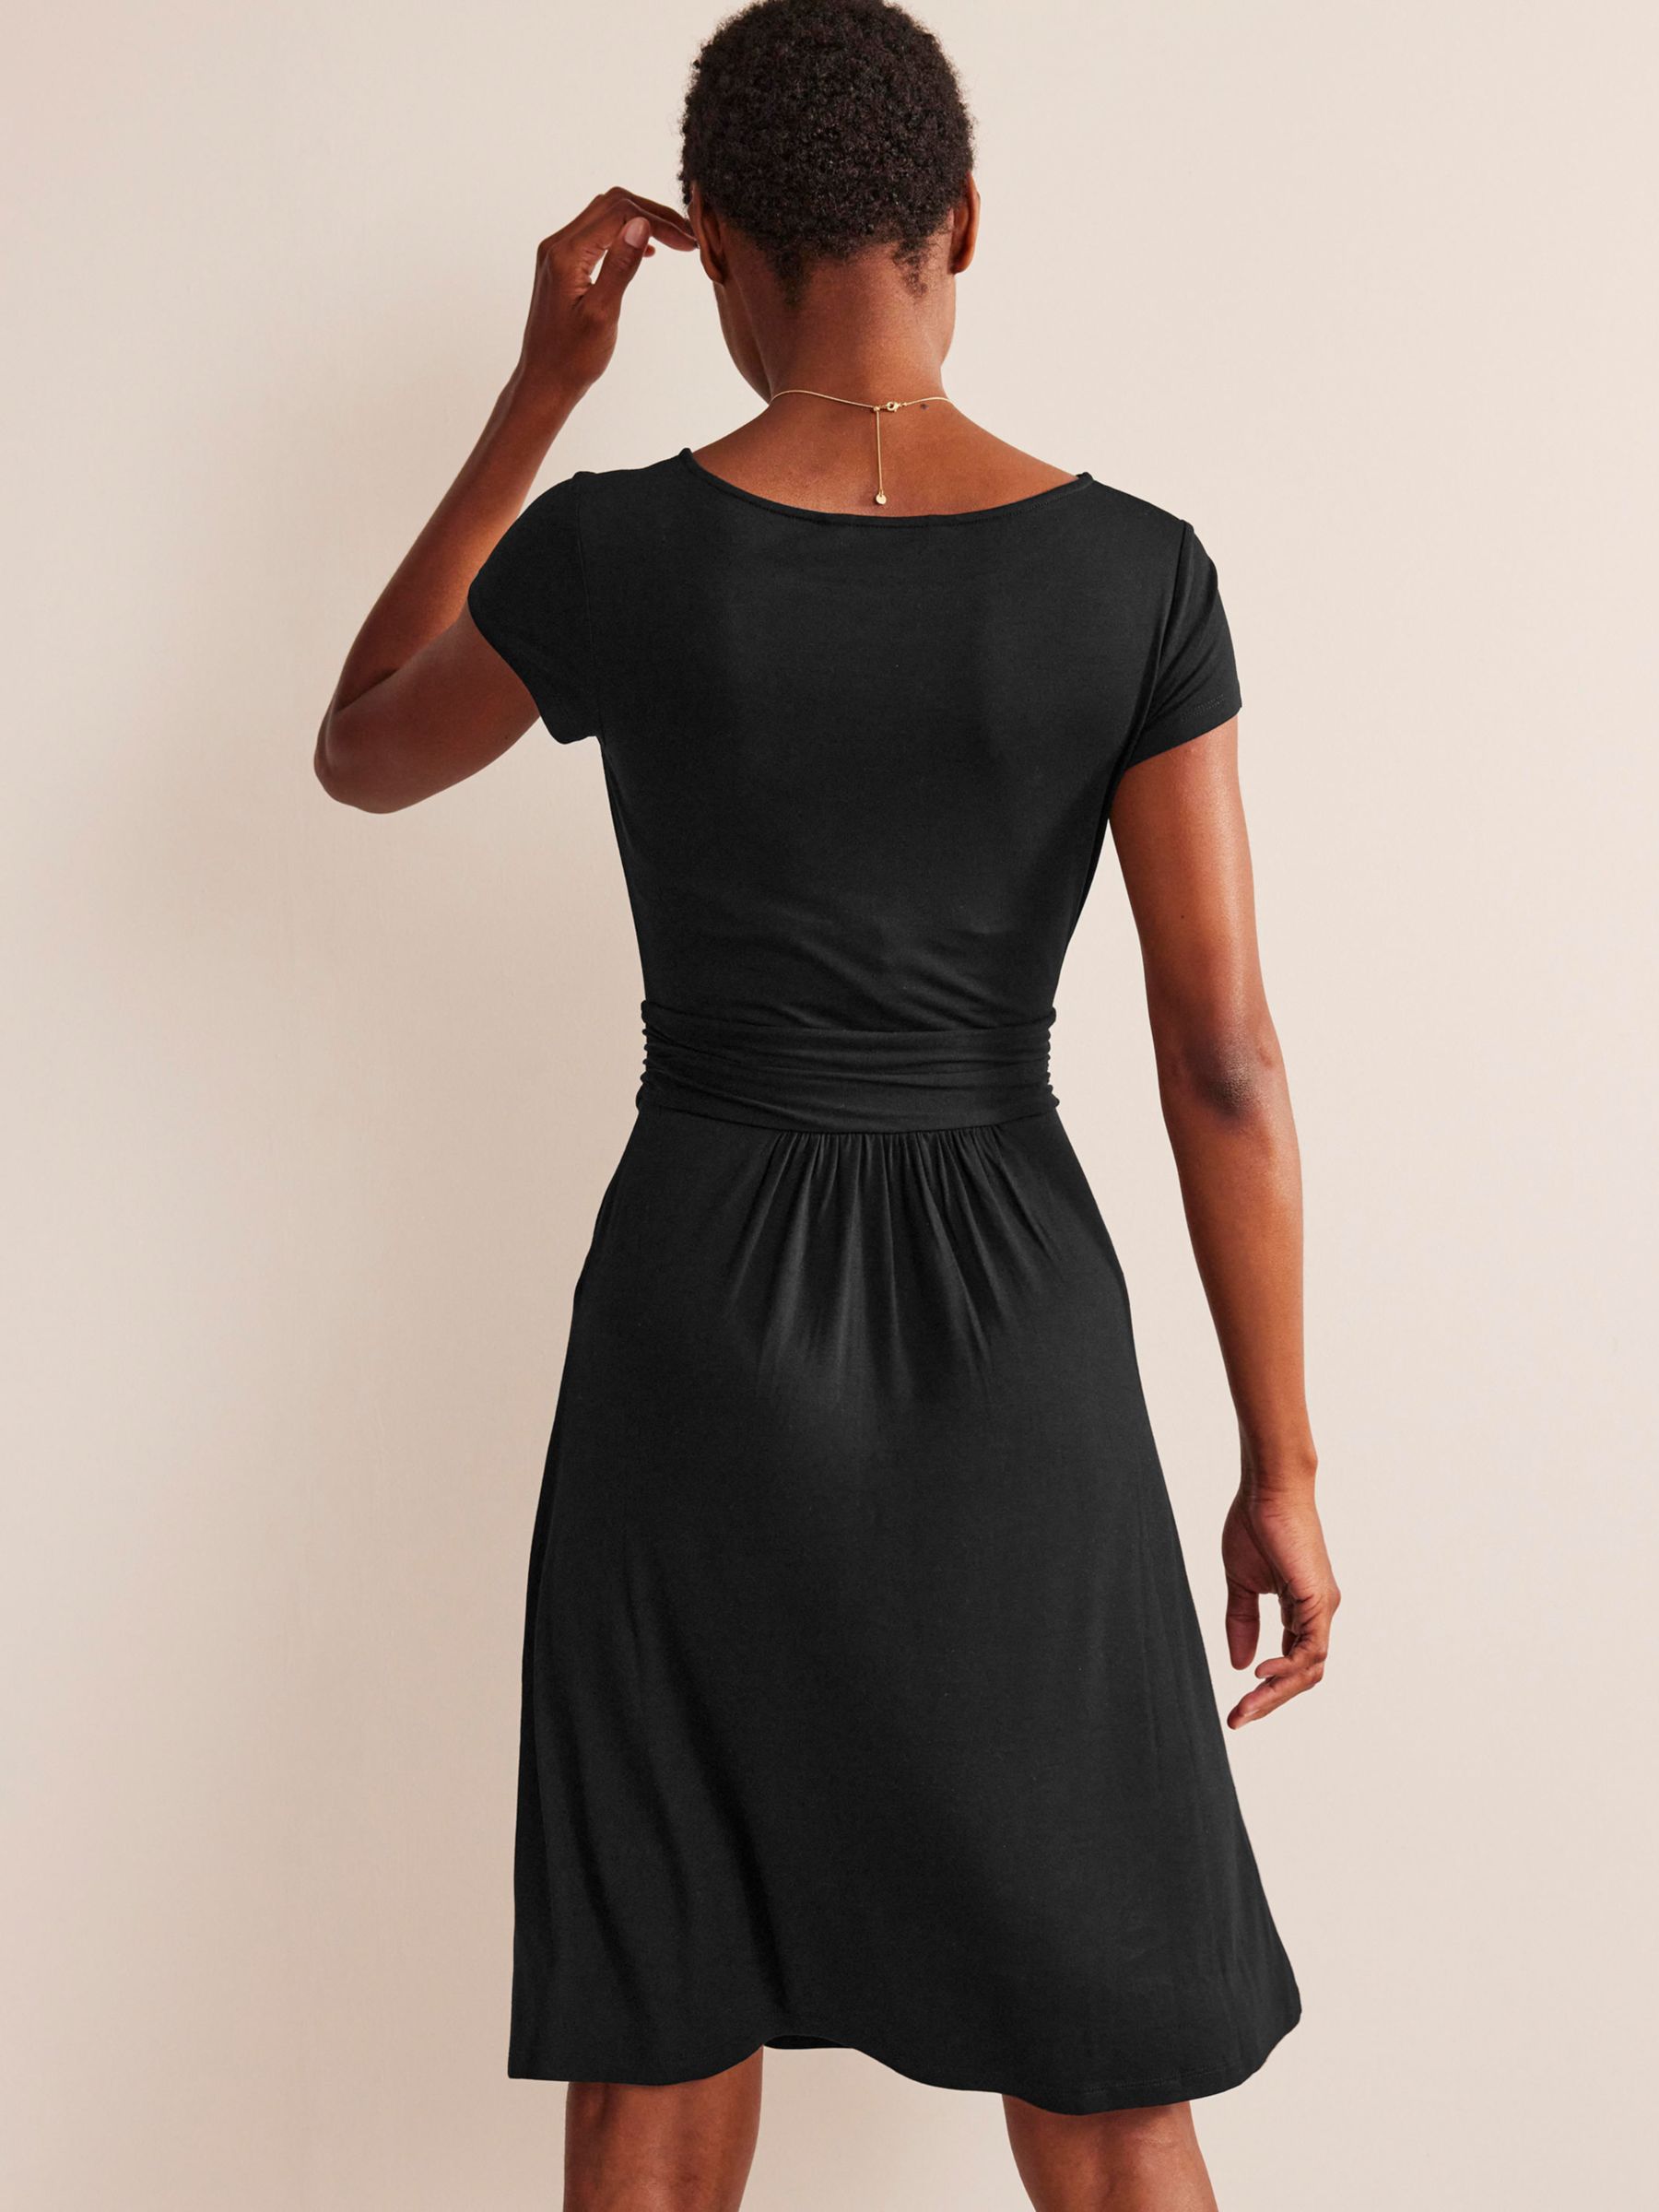 Boden Amelie Flared Dress, Black, 8